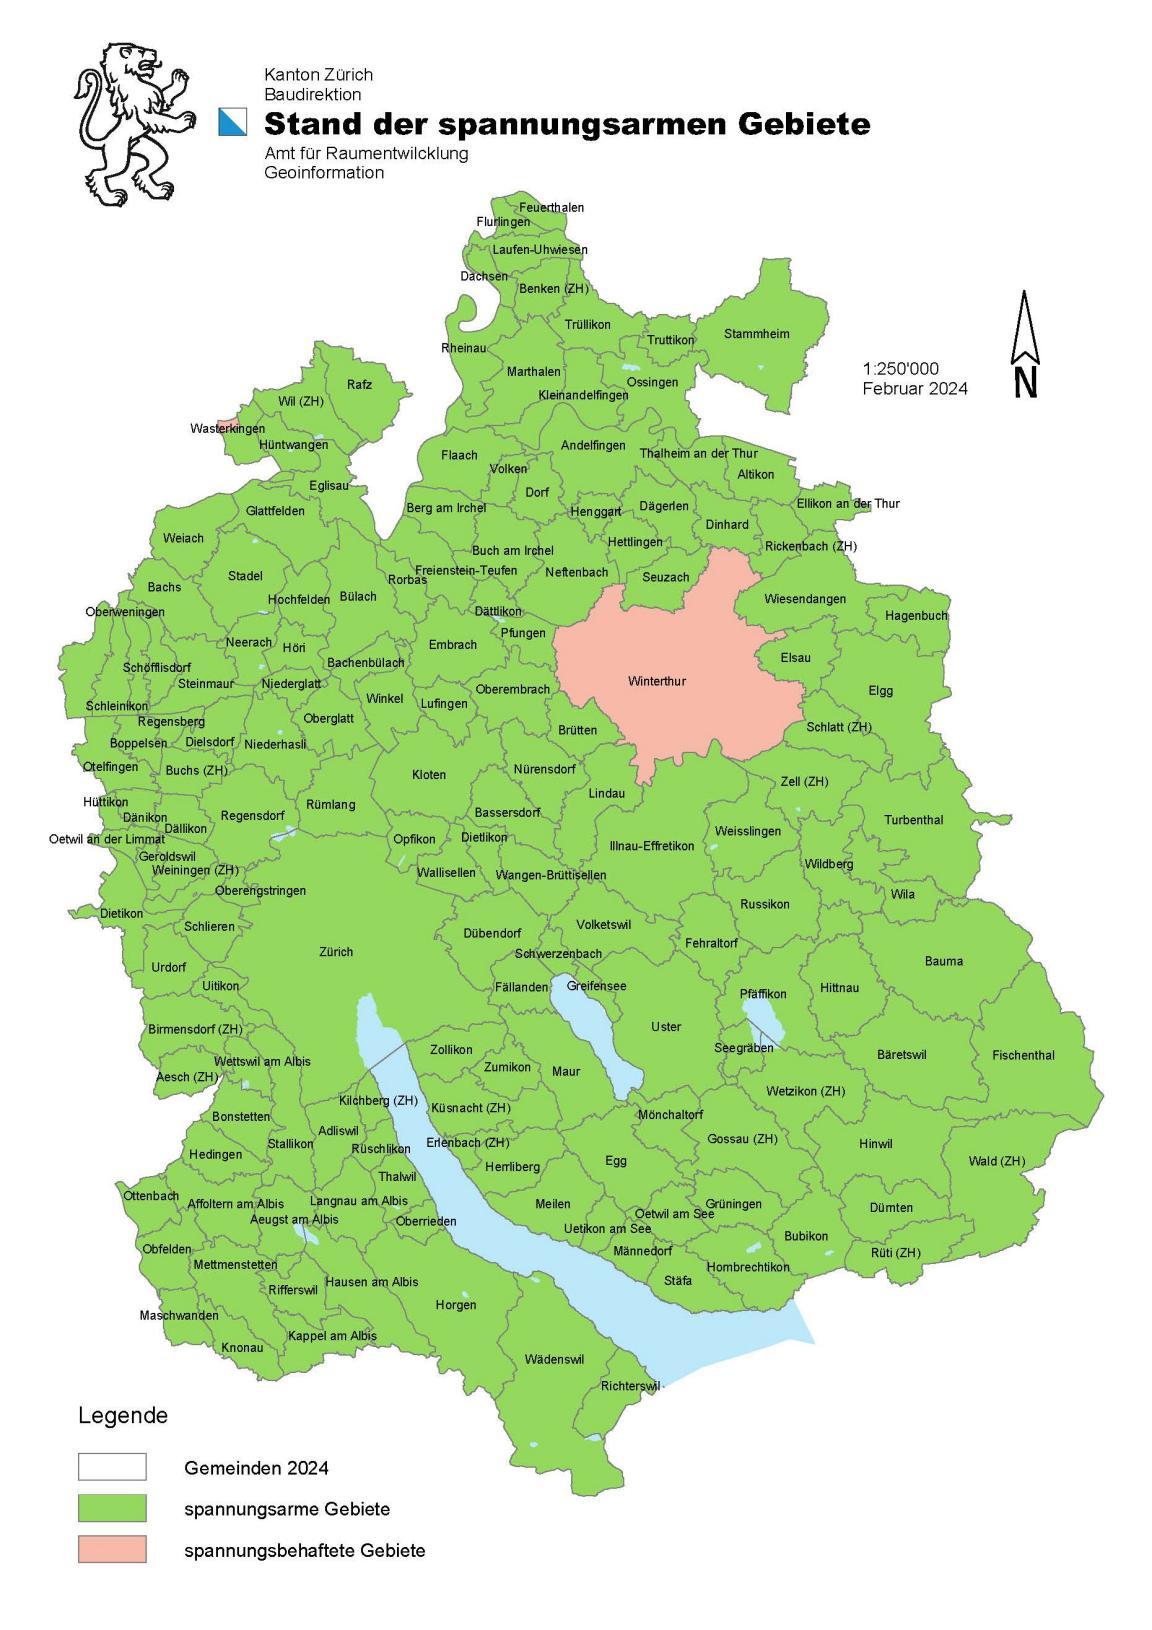 Grafische Übersicht über die spannungsarmen Gebiete im Kanton Zürich. Mit Ausnahme der Stadt Winterthur sind die meisten Gebiete spannungsarm.